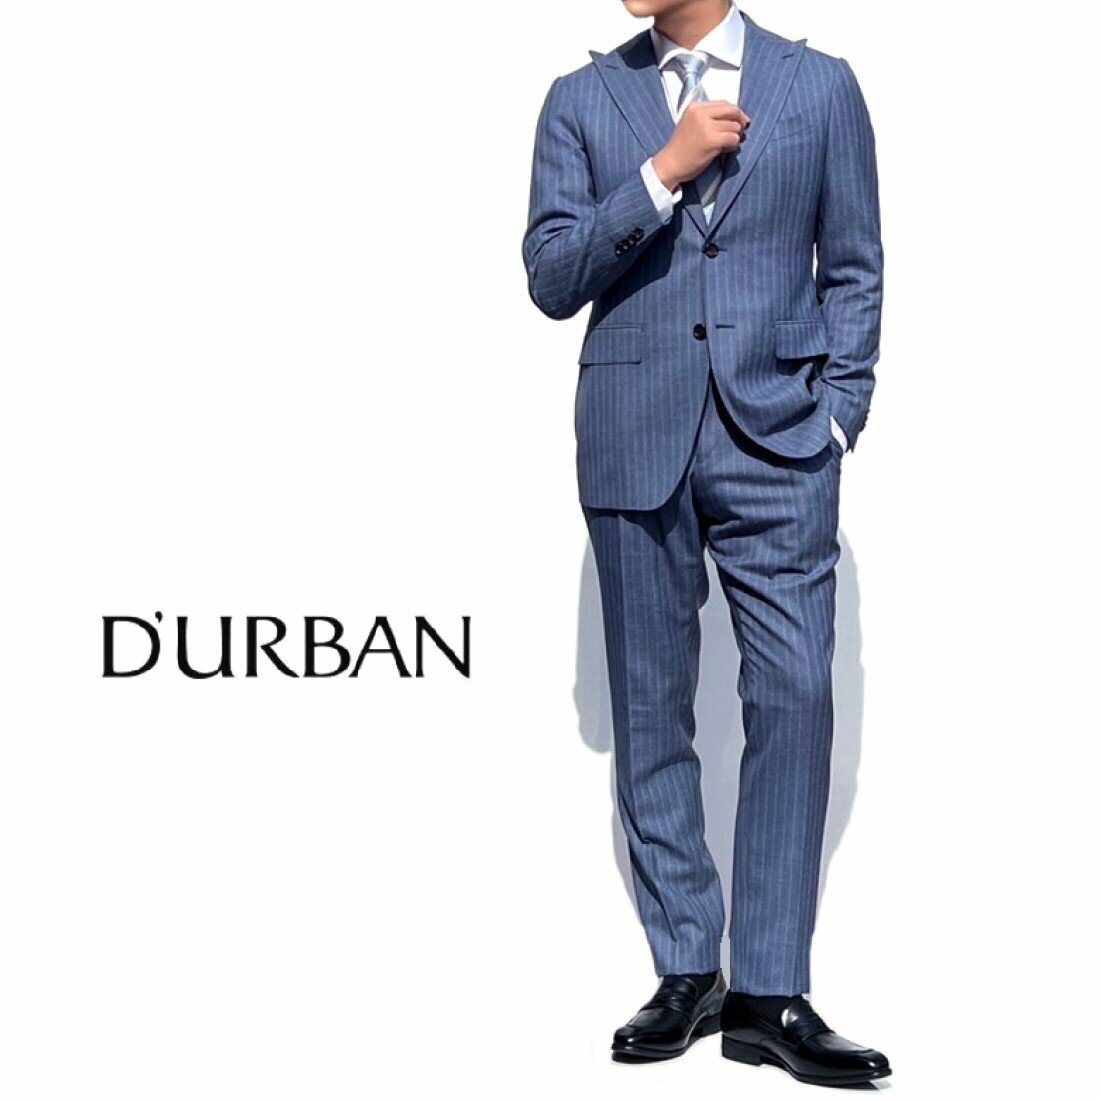 再再販 格安 爽やかなカラーリングが魅力的な一着 D'URBAN 日本製ネップストライプウールスーツライトブルー系背抜き仕立て 4irsoa.uj.ac.za 4irsoa.uj.ac.za